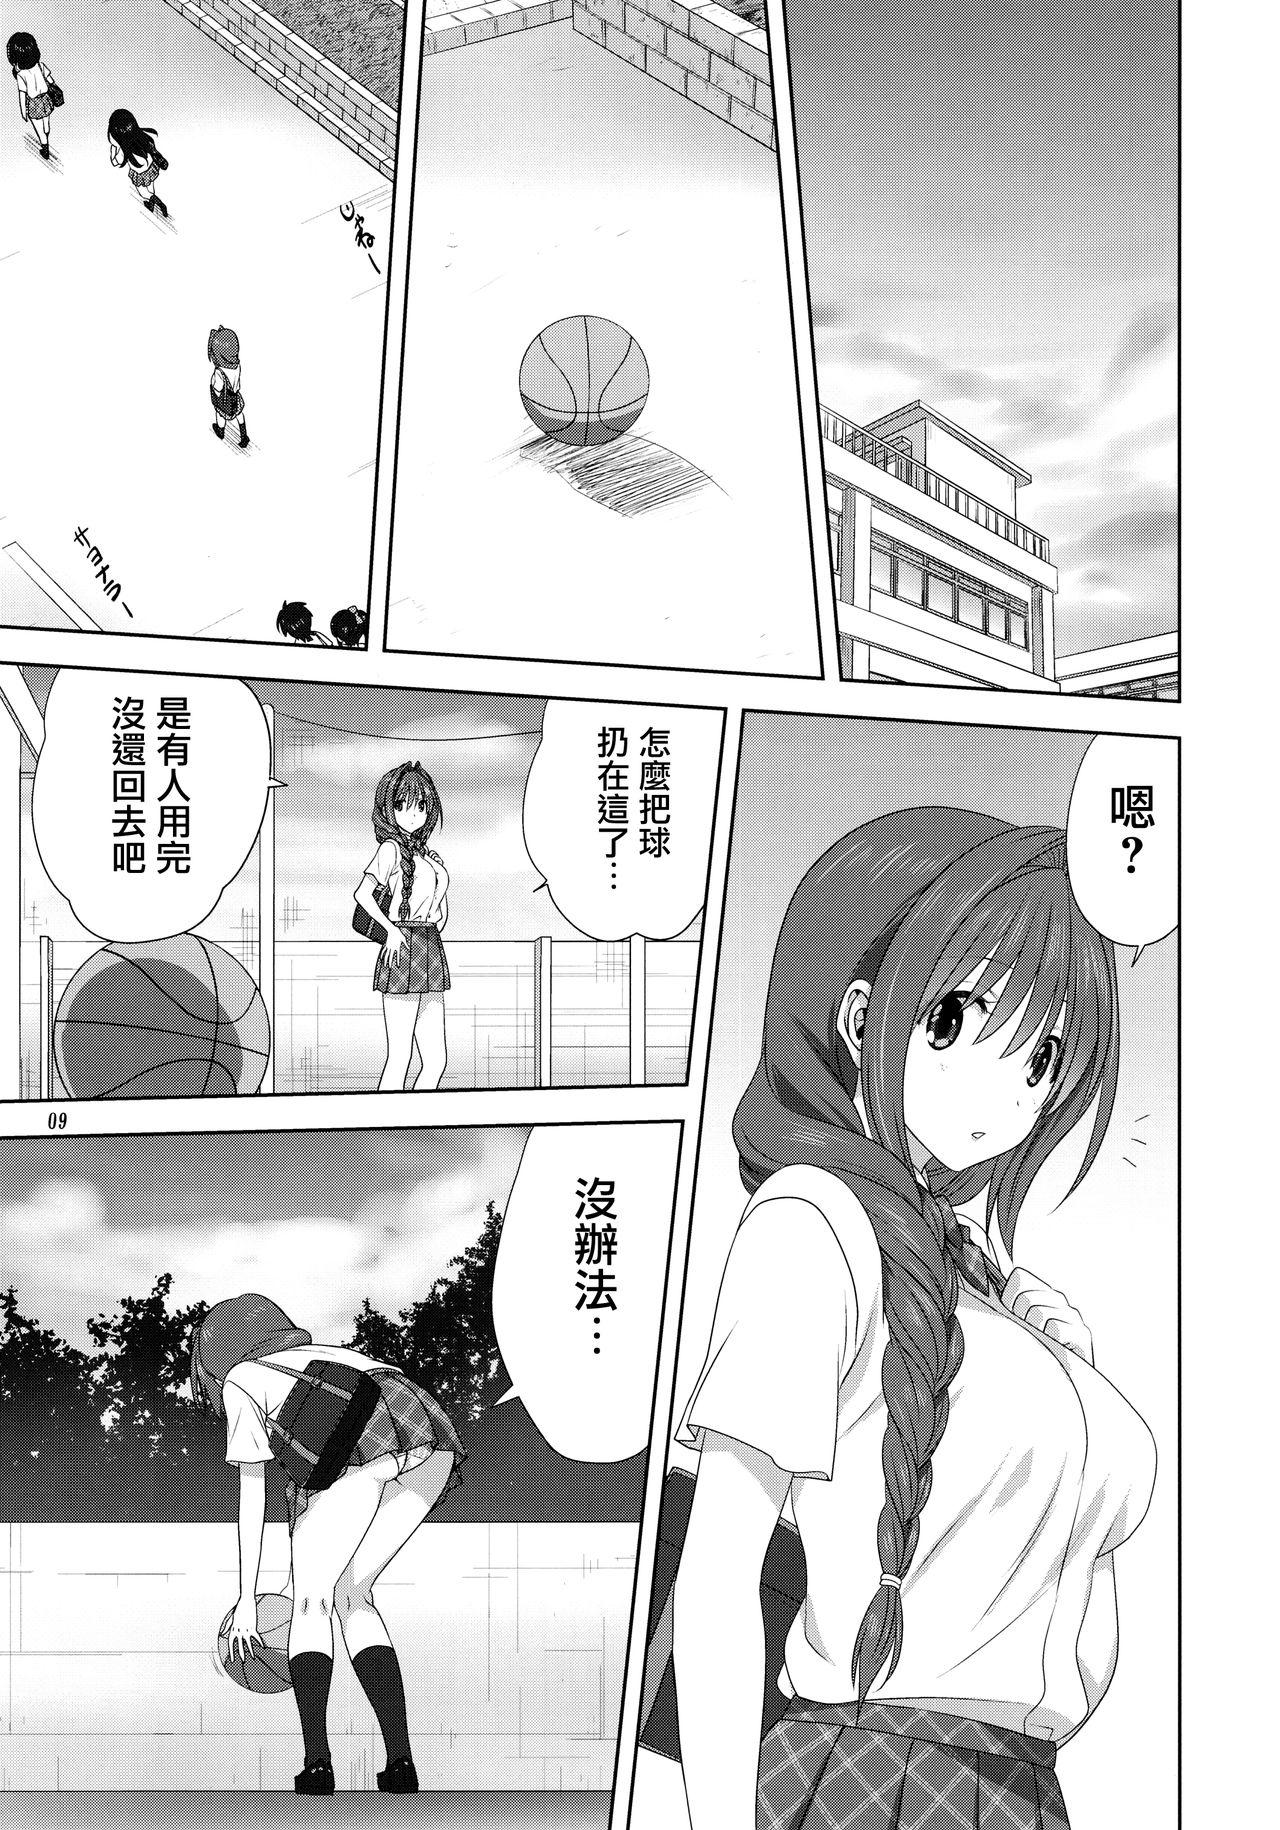 Gym Akiko-san to Issho 25 - Kanon 3way - Page 8